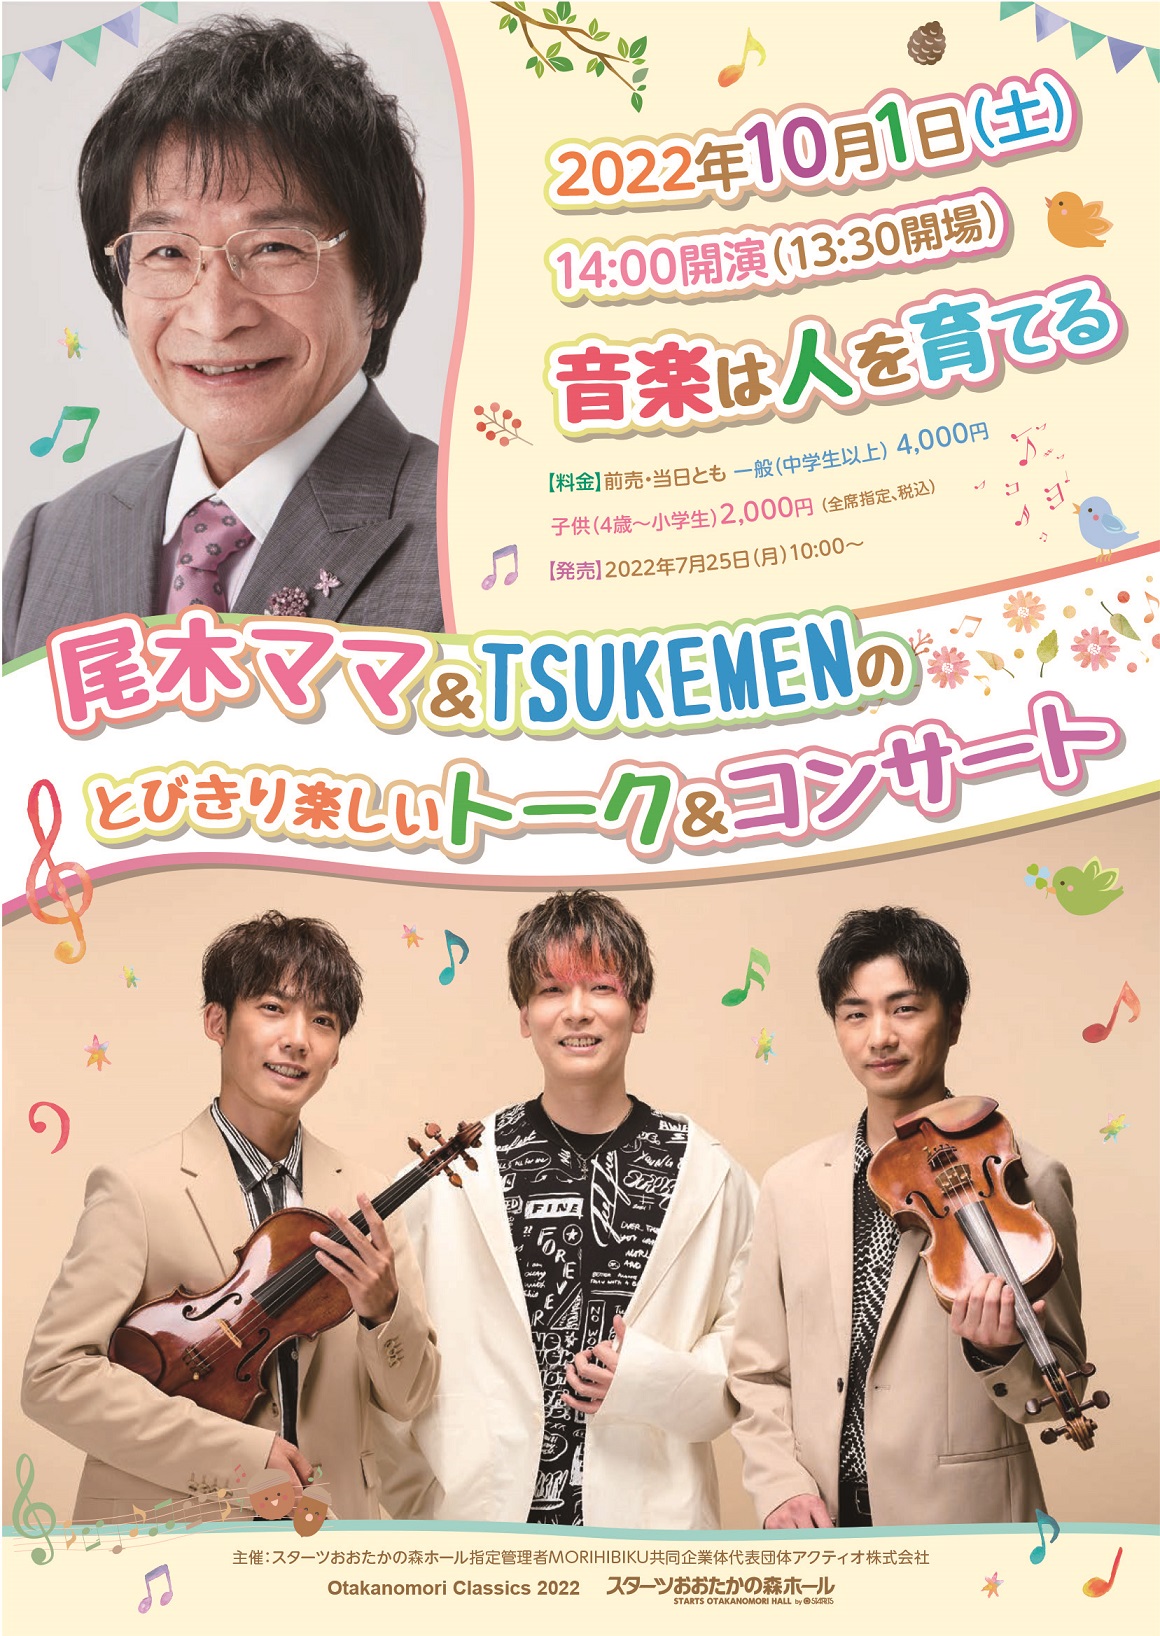 TSUKEMEN 15th Anniversary concert